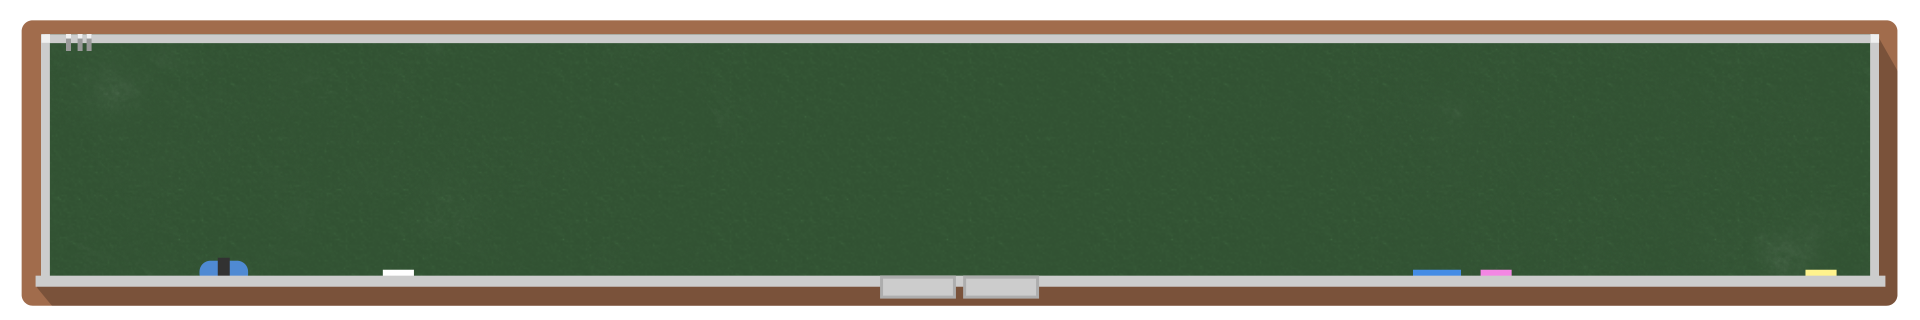 黒板のテロップ 緑 テロップ サイト